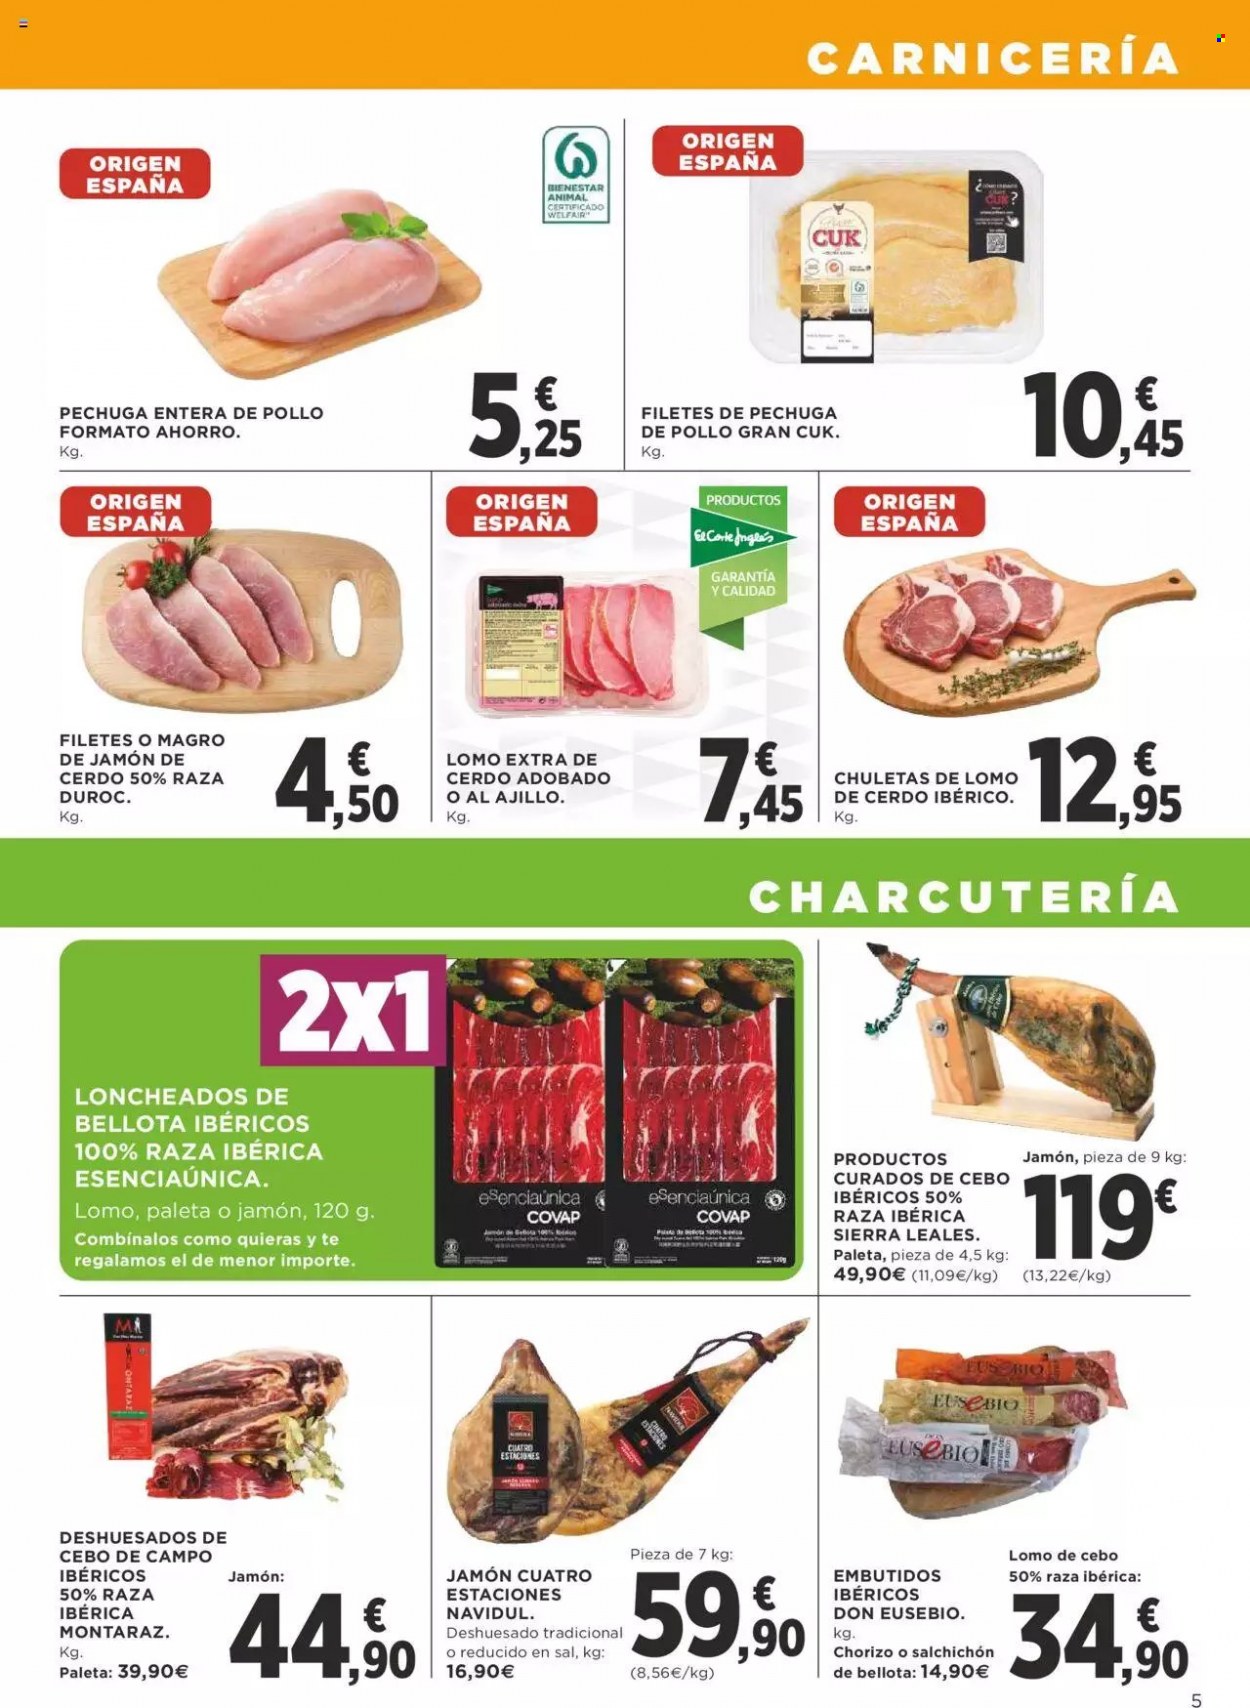 thumbnail - Folleto actual Supercor supermercados - 03/01/22 - 12/01/22 - Ventas - cerdo ibérico, COVAP, pollo, jamón, chorizo, lomo de cebo, salchichón, embutidos, sal. Página 5.